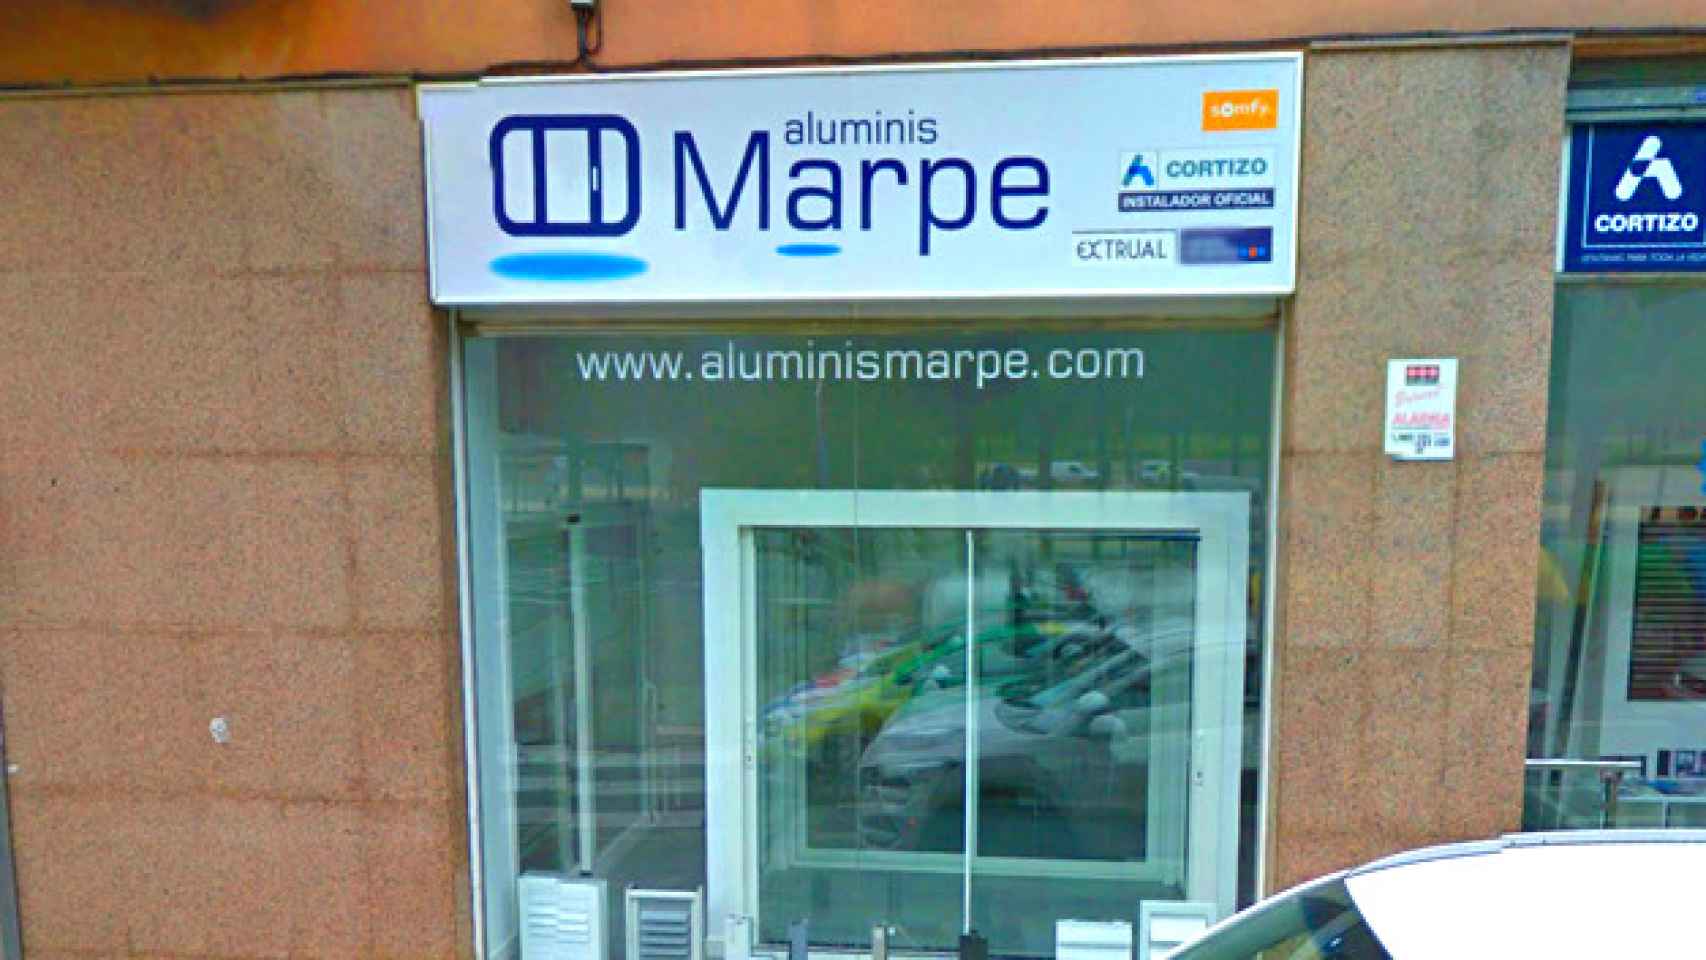 Aluminis Marpe, de Mataró, fabricante de carpintería metálica / CG